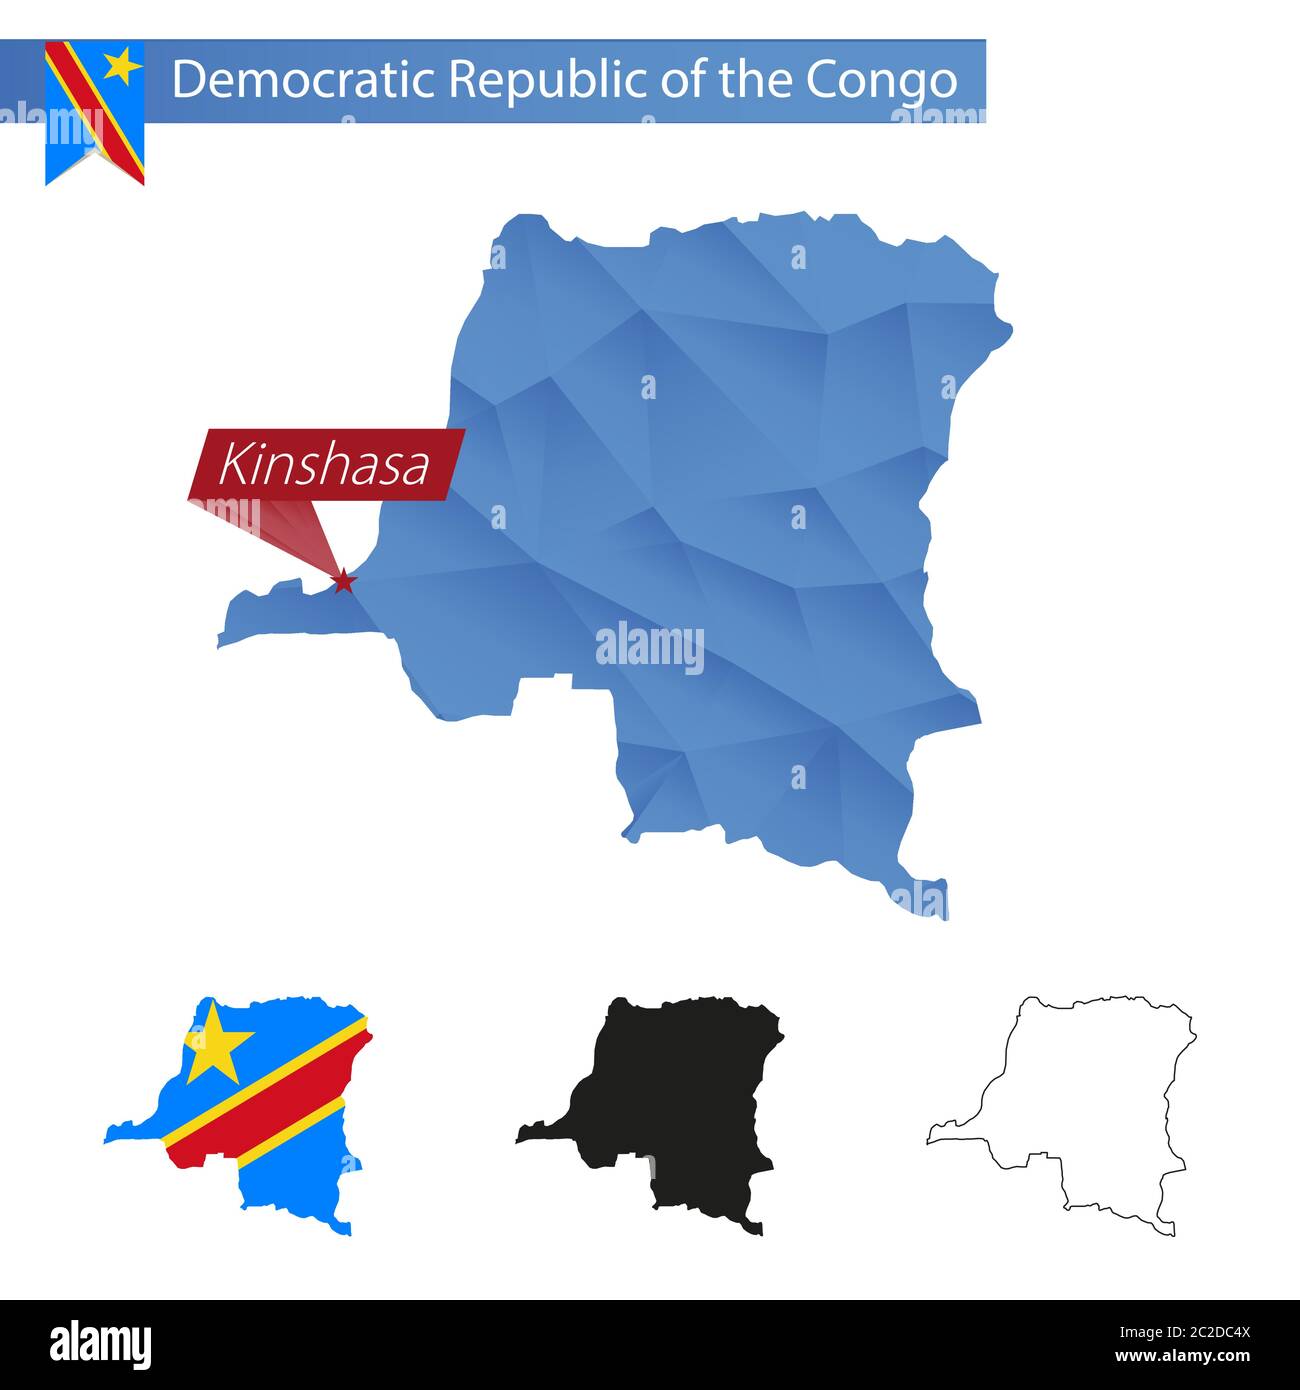 Carte bleu de la République démocratique du Congo à faible Poly avec la capitale Kinshasa, quatre versions de la carte. Illustration vectorielle. Illustration de Vecteur